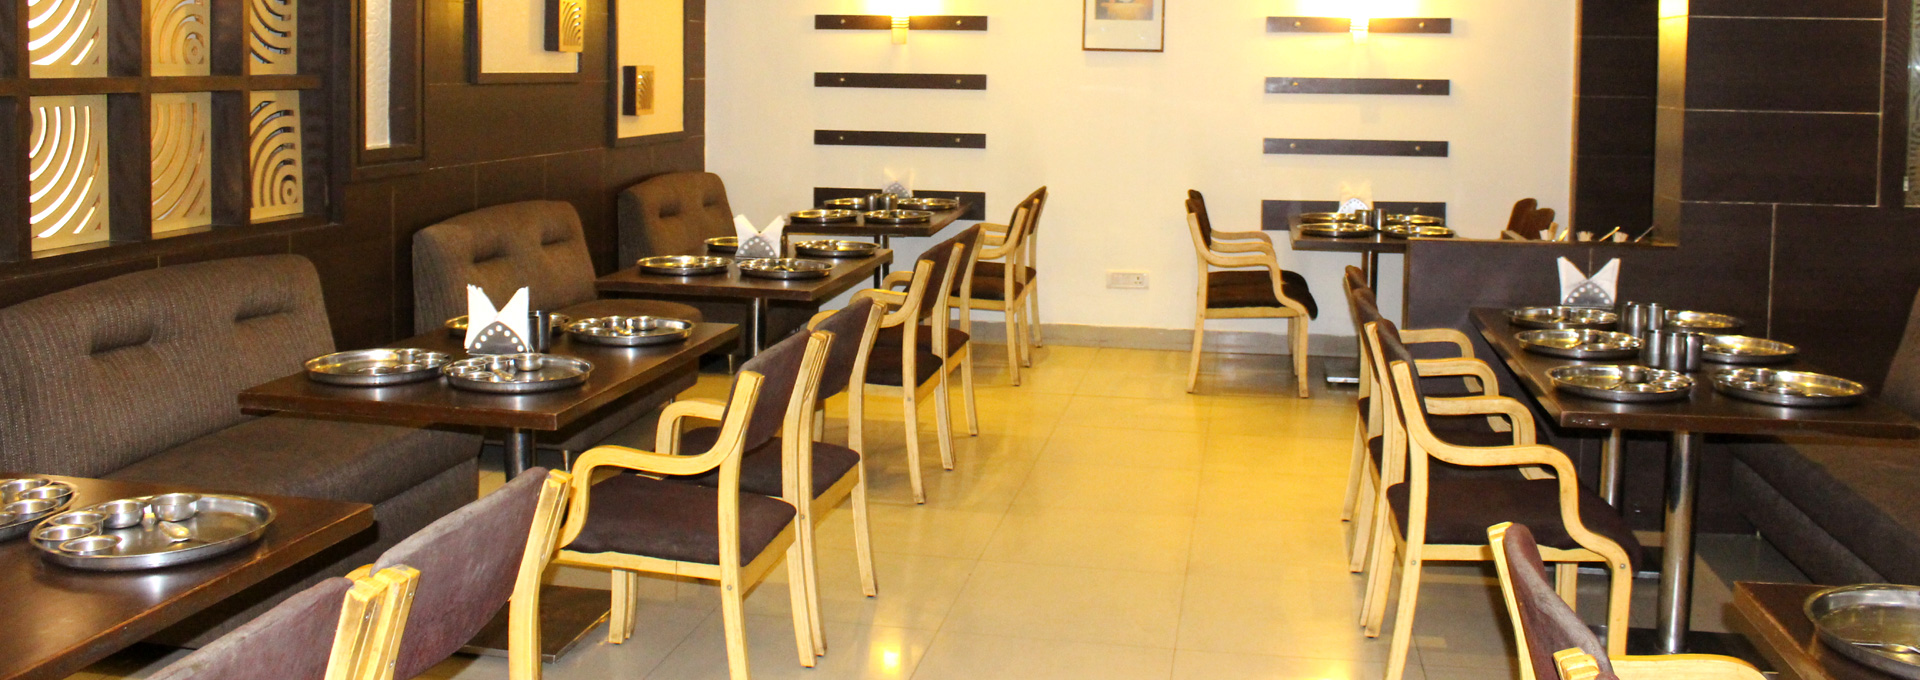 Girnar Restaurant In Chhattisgarh